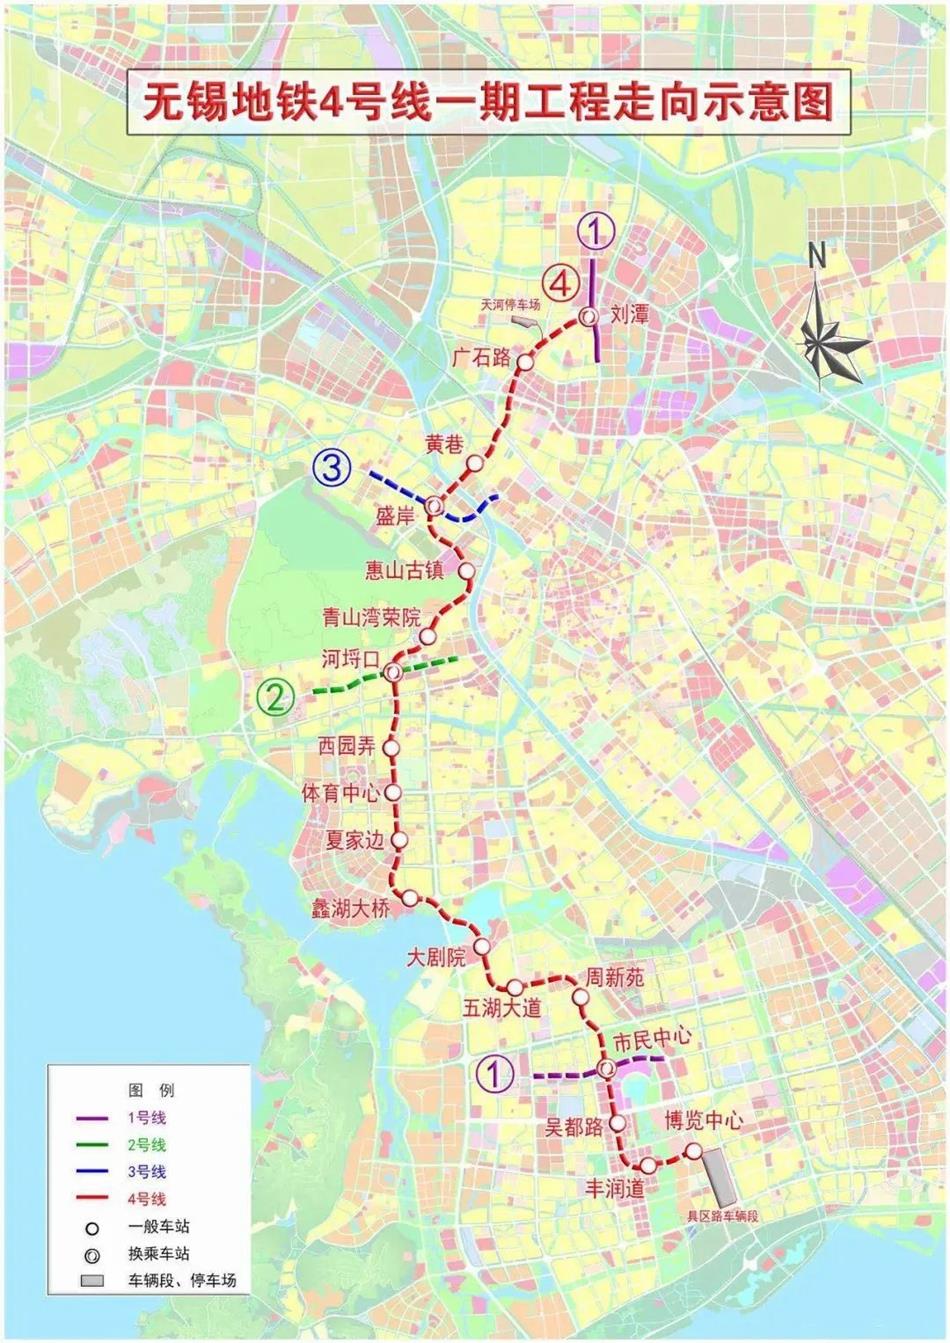 地铁4号线根据2021年1月公布的